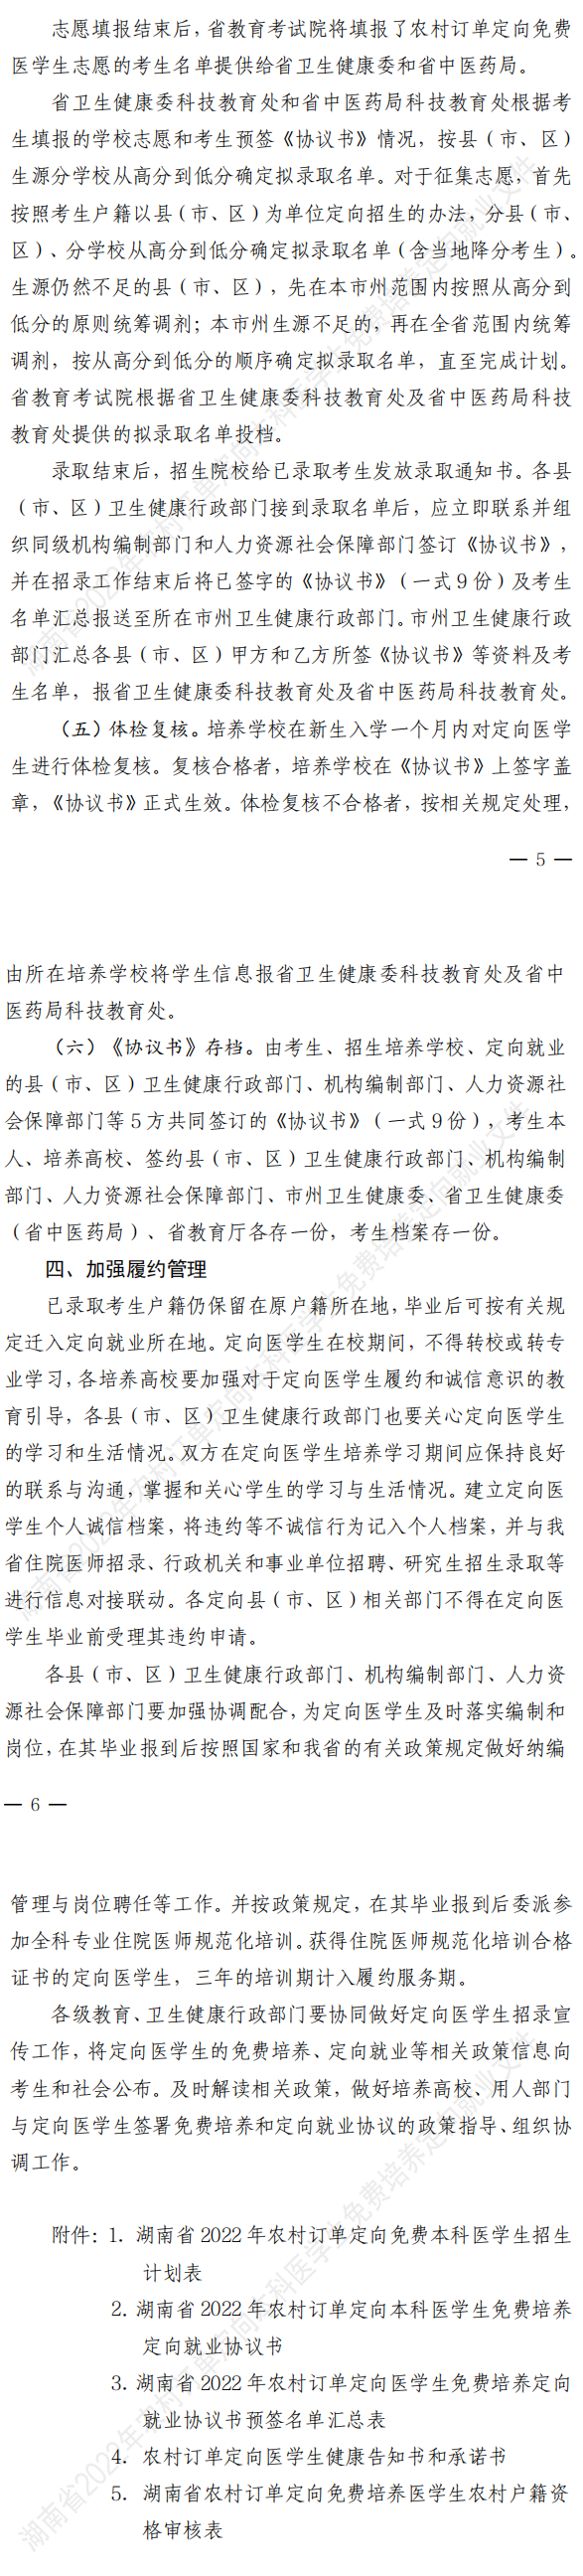 湖南：关于做好2022年农村订单定向免费本科医学生招生培养工作的通知_1